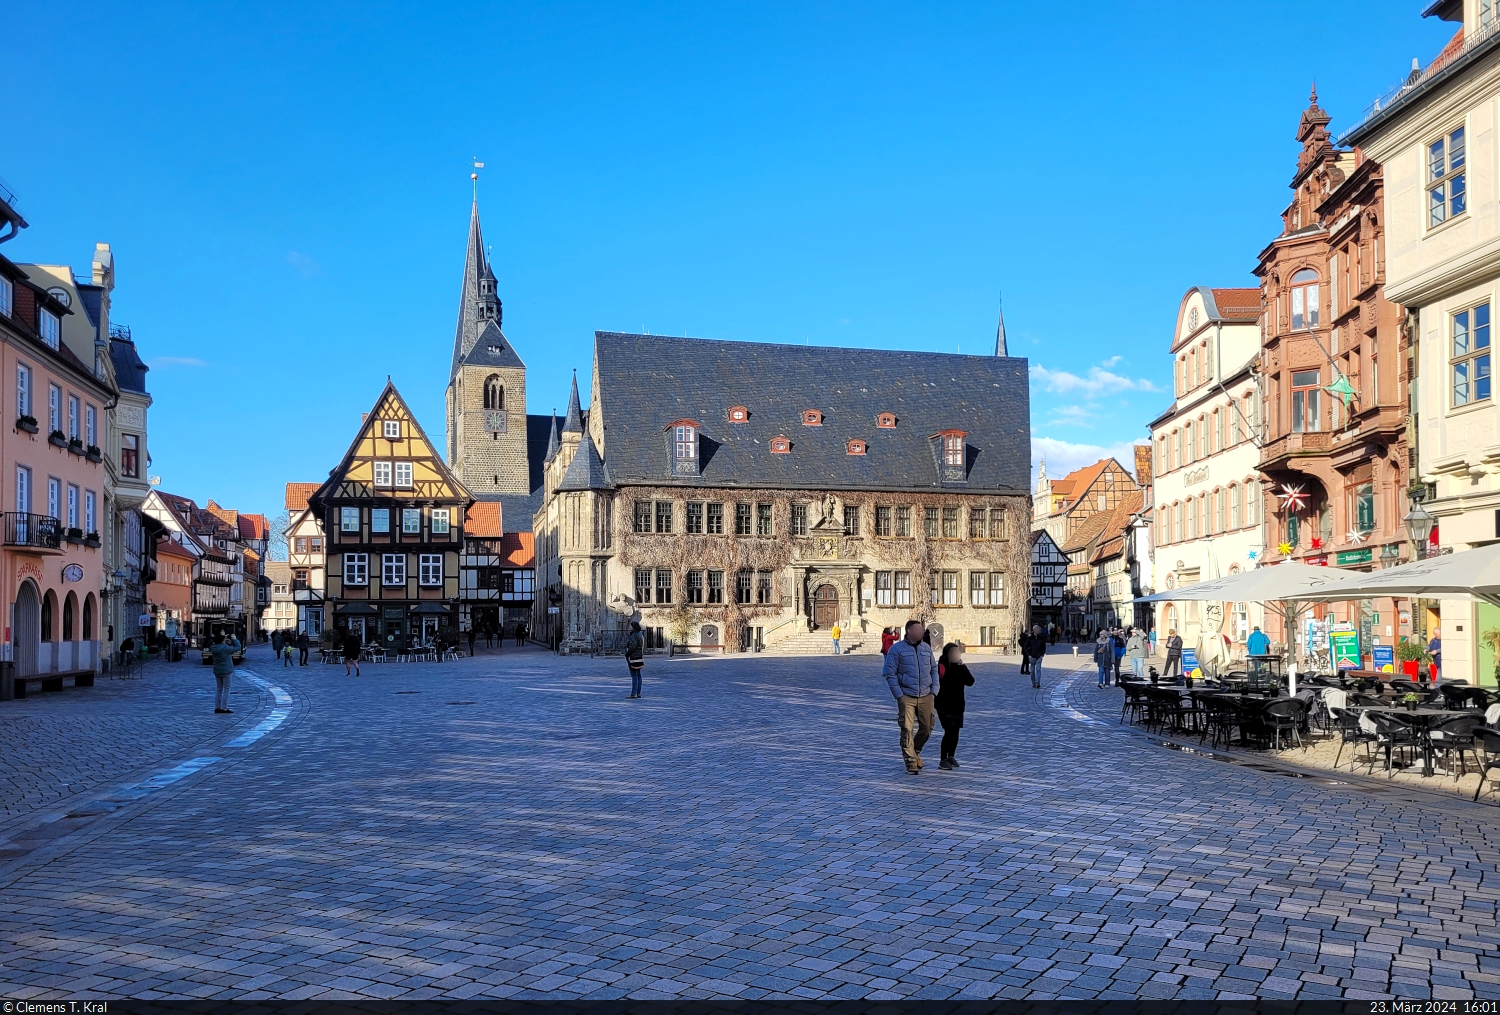 UNESCO-Welterbe und daher beliebtes Reiseziel: die Stadt Quedlinburg, hier mit dem Rathaus und dem Turm der Marktkirche St. Benedikti.

🕓 23.3.2024 | 16:01 Uhr